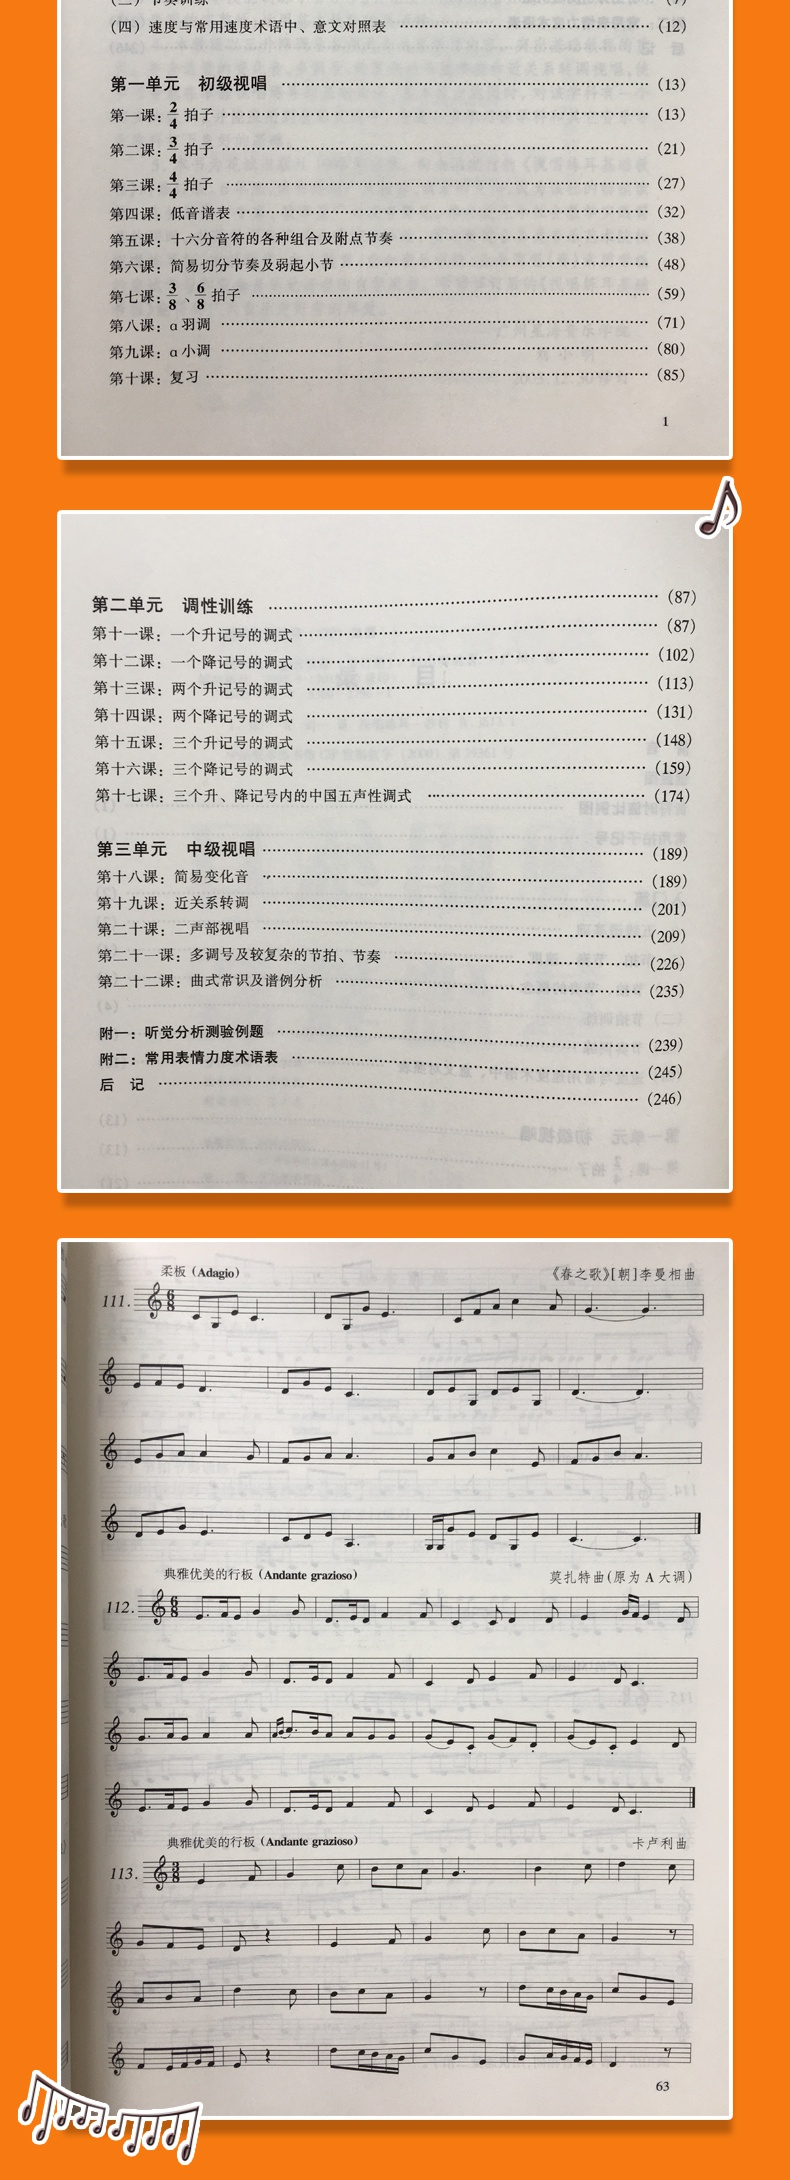 惠典正版正版 视唱练耳基础教程(修订版) 刘小明编 走进音乐世界系列